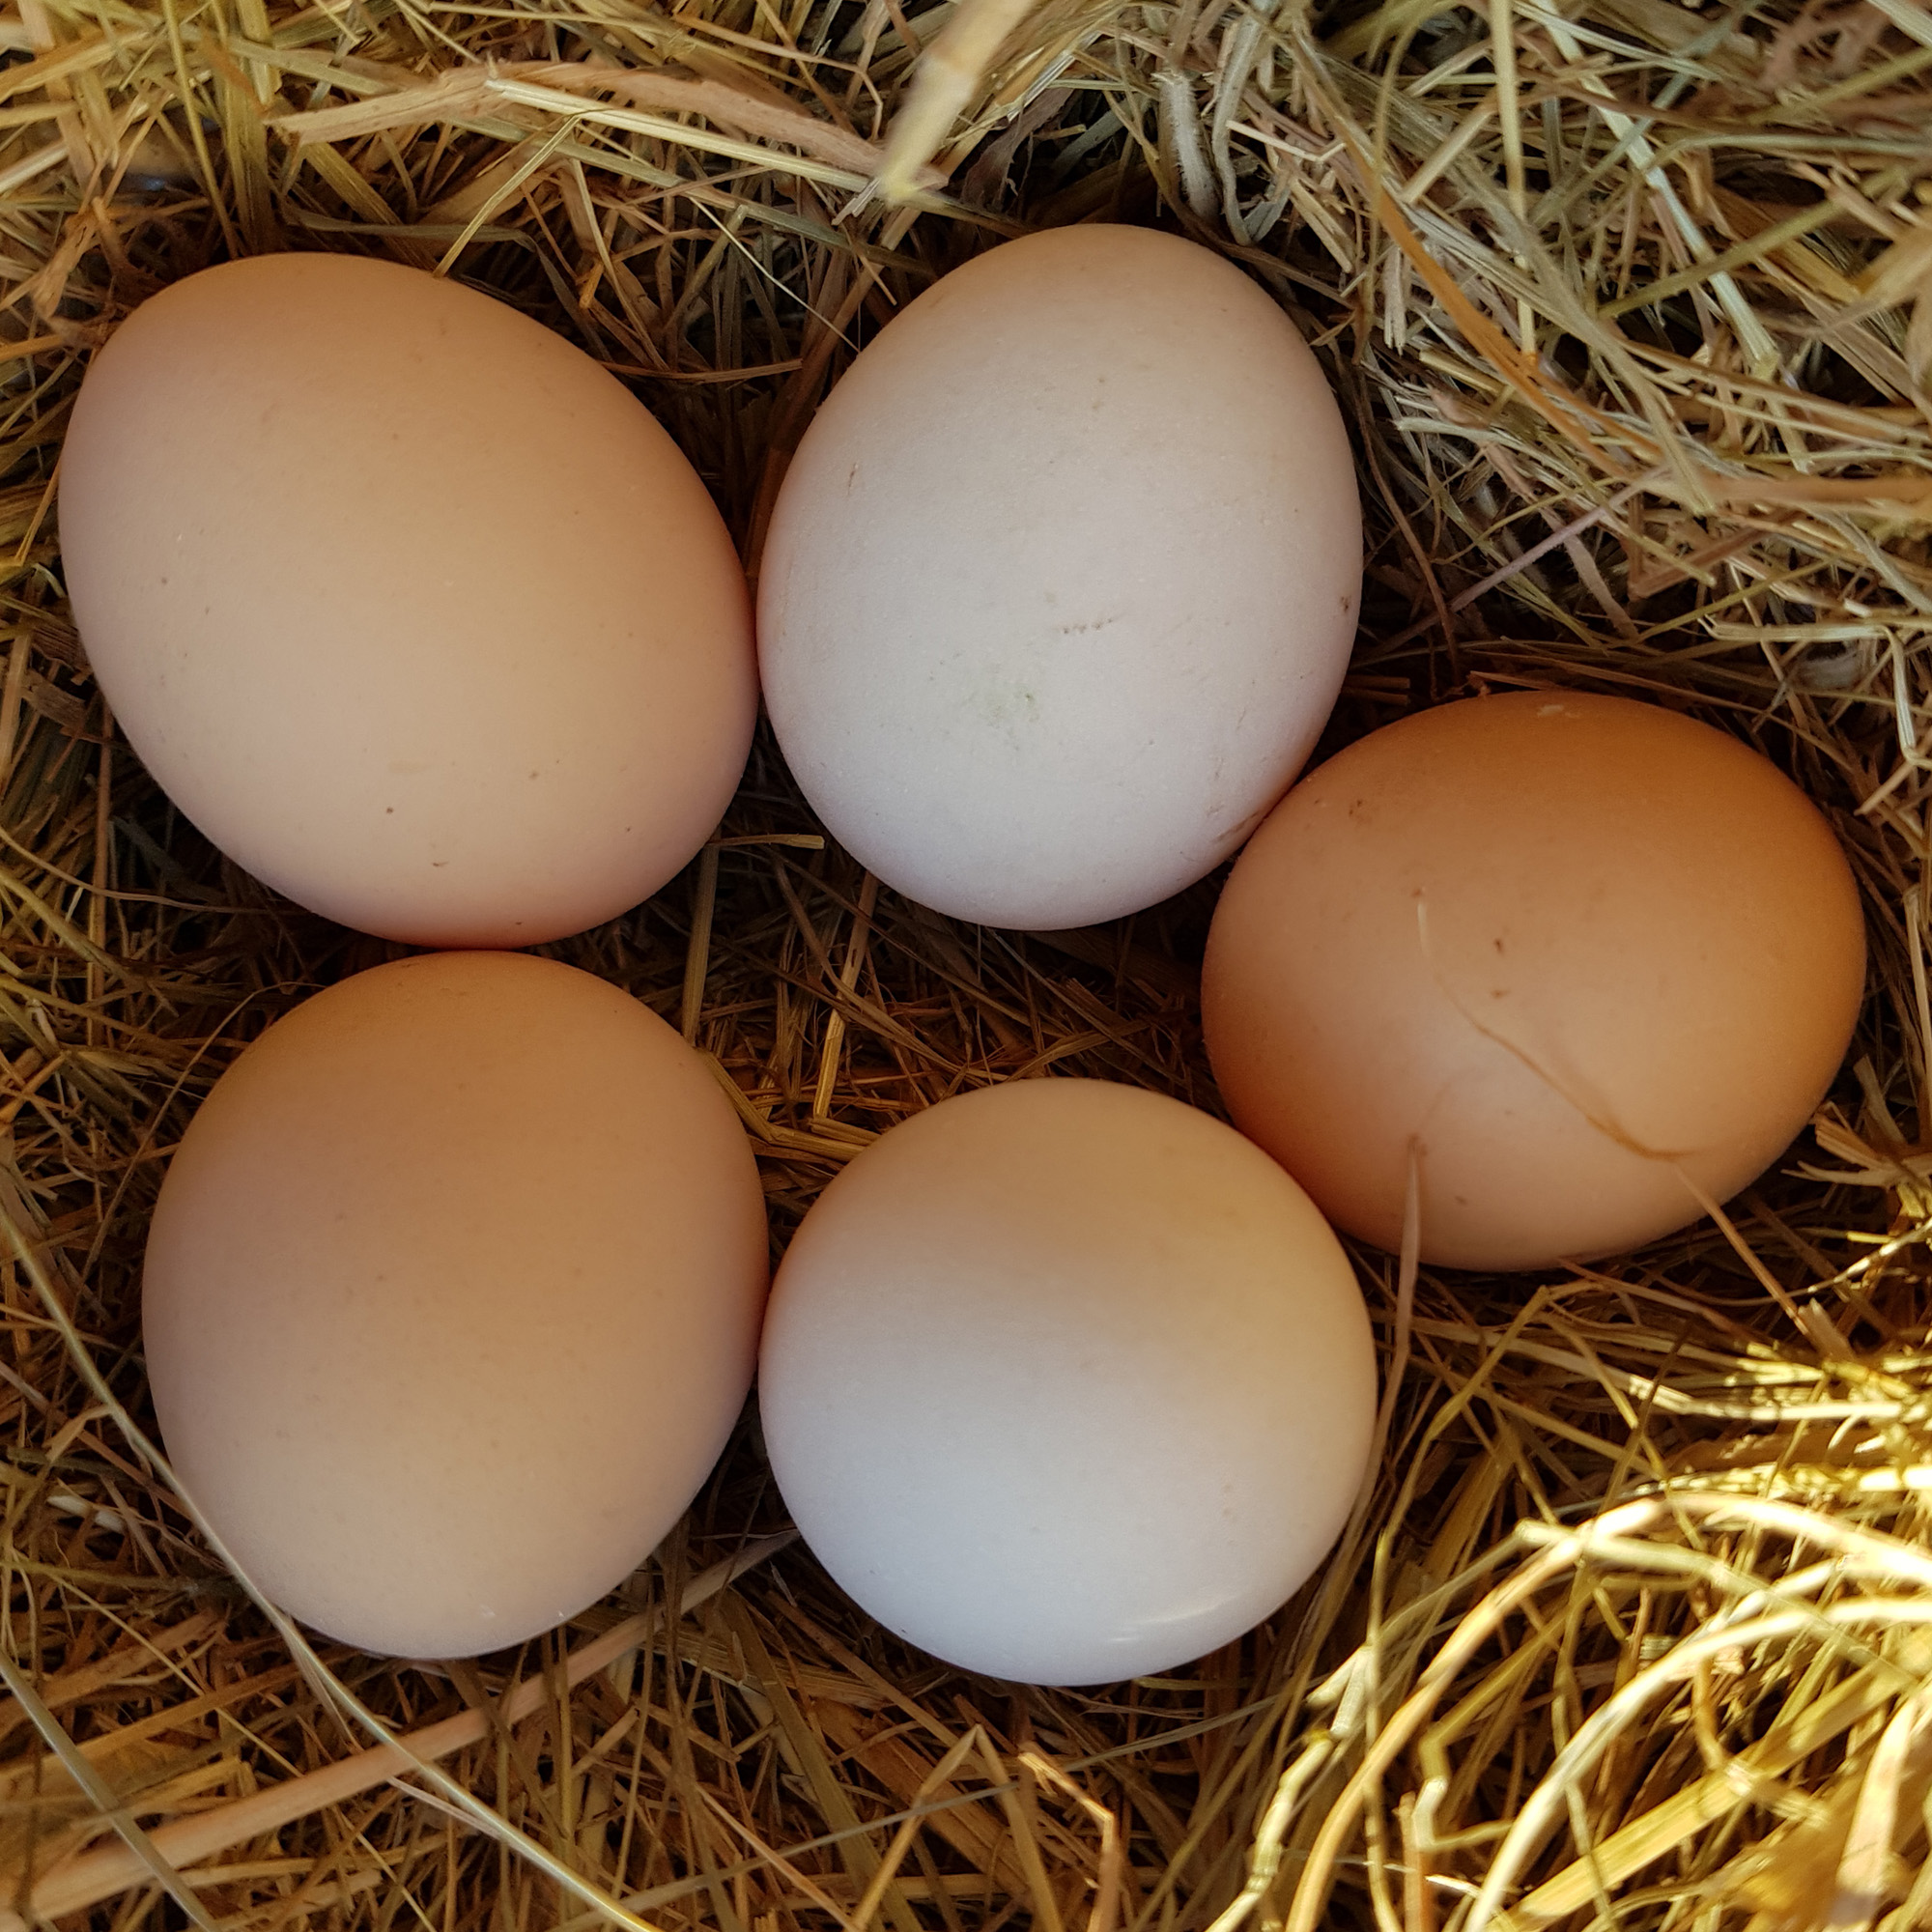 pekin duck hatching eggs